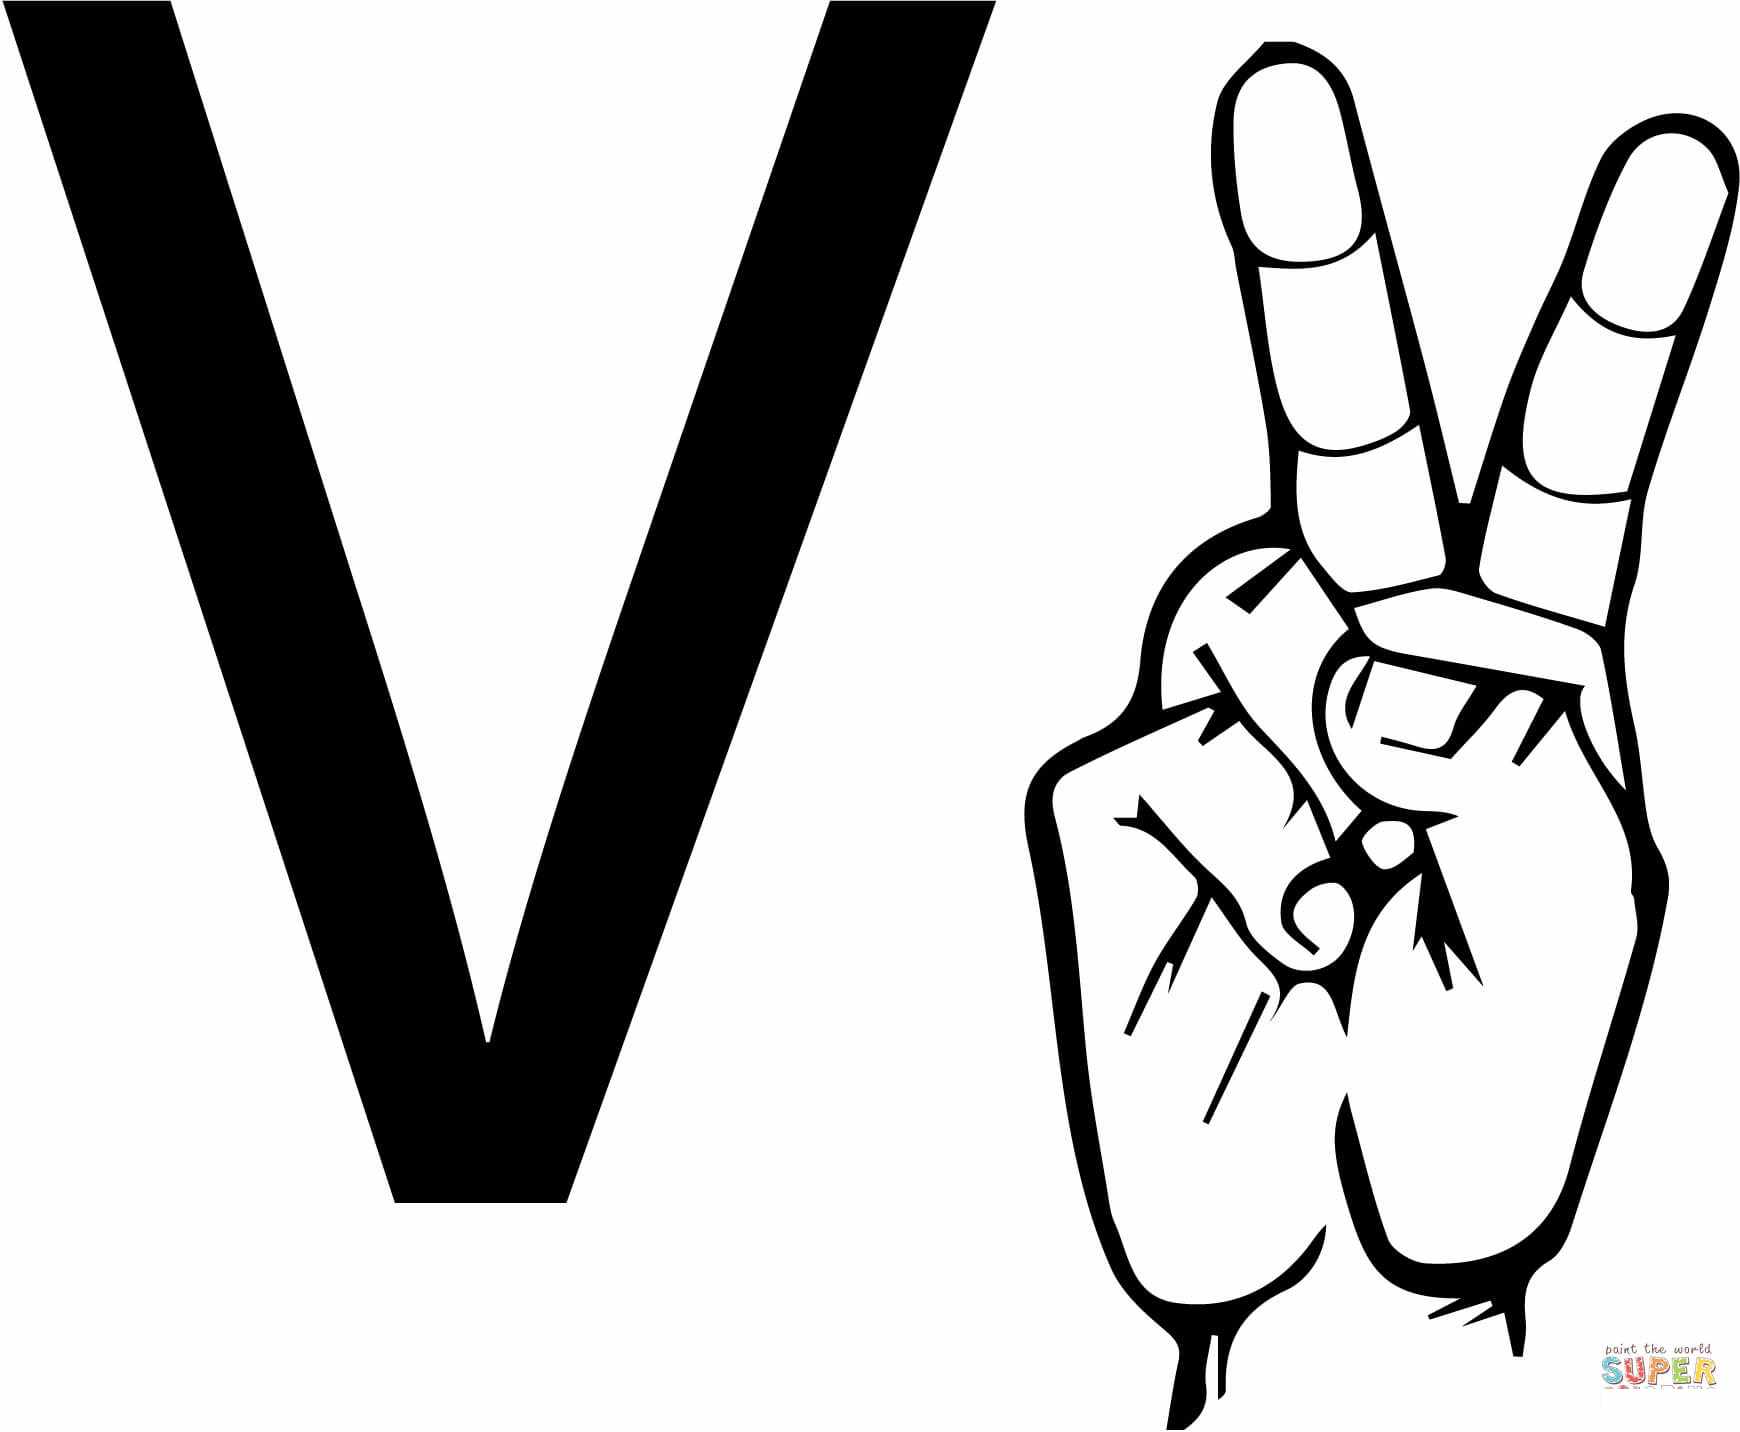 ASL viipekeeltäht V